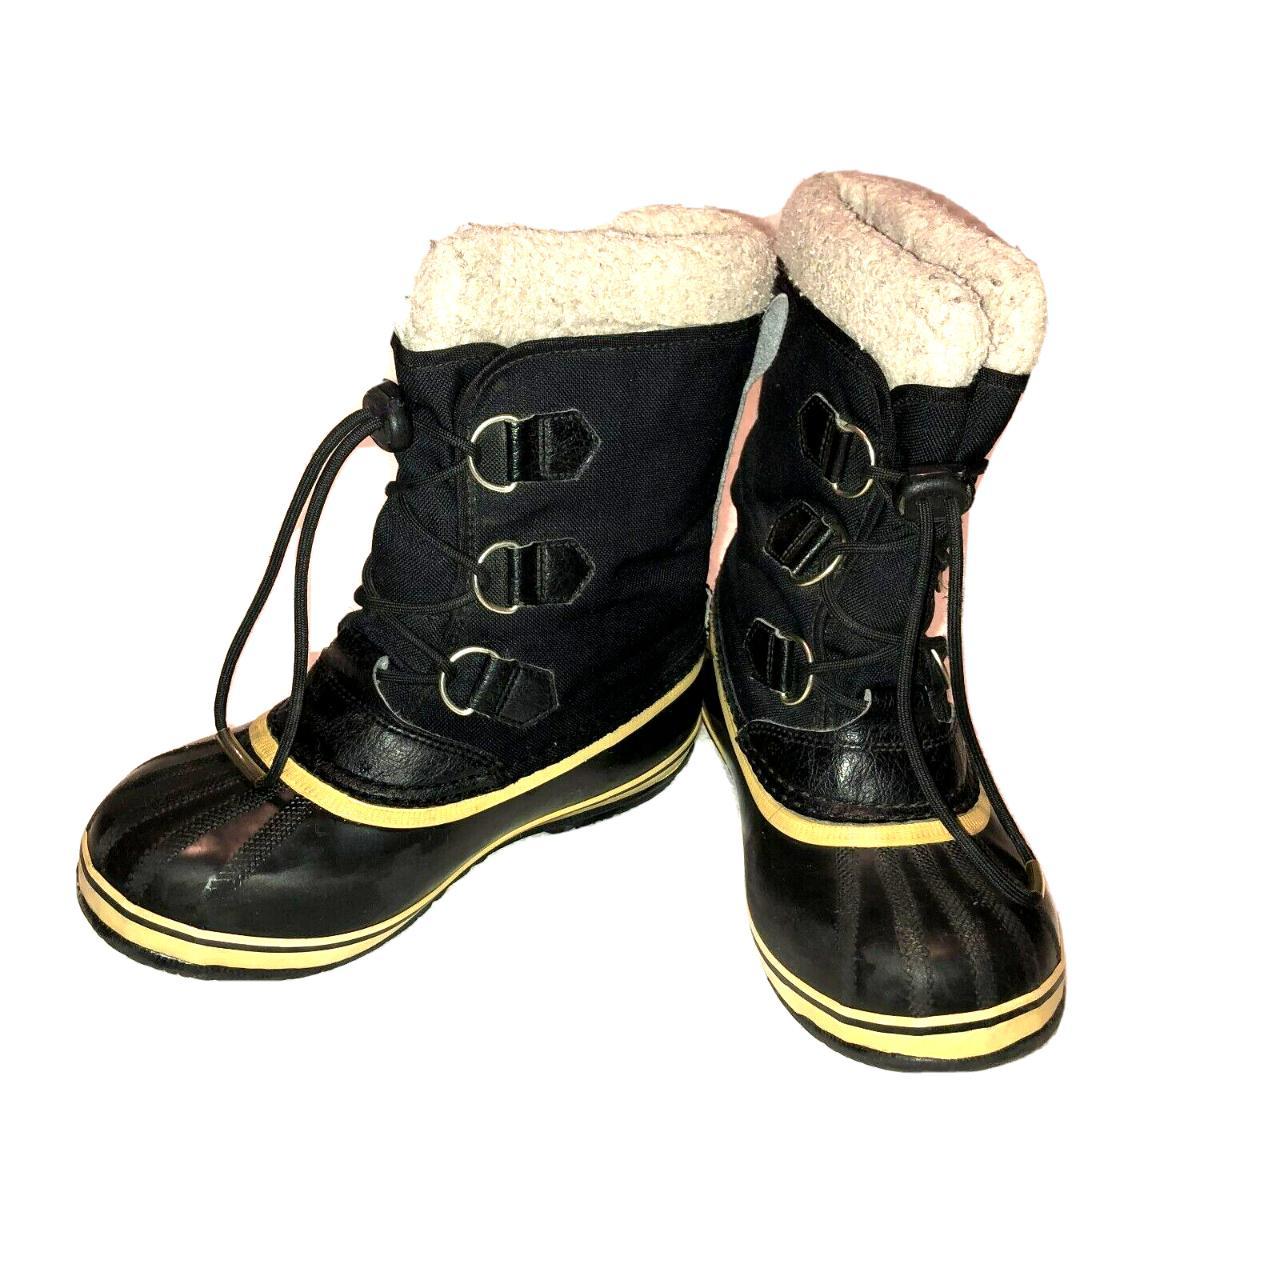 Sorel Snow Winter Boots Size 3 Black Canvas Lace Up... - Depop